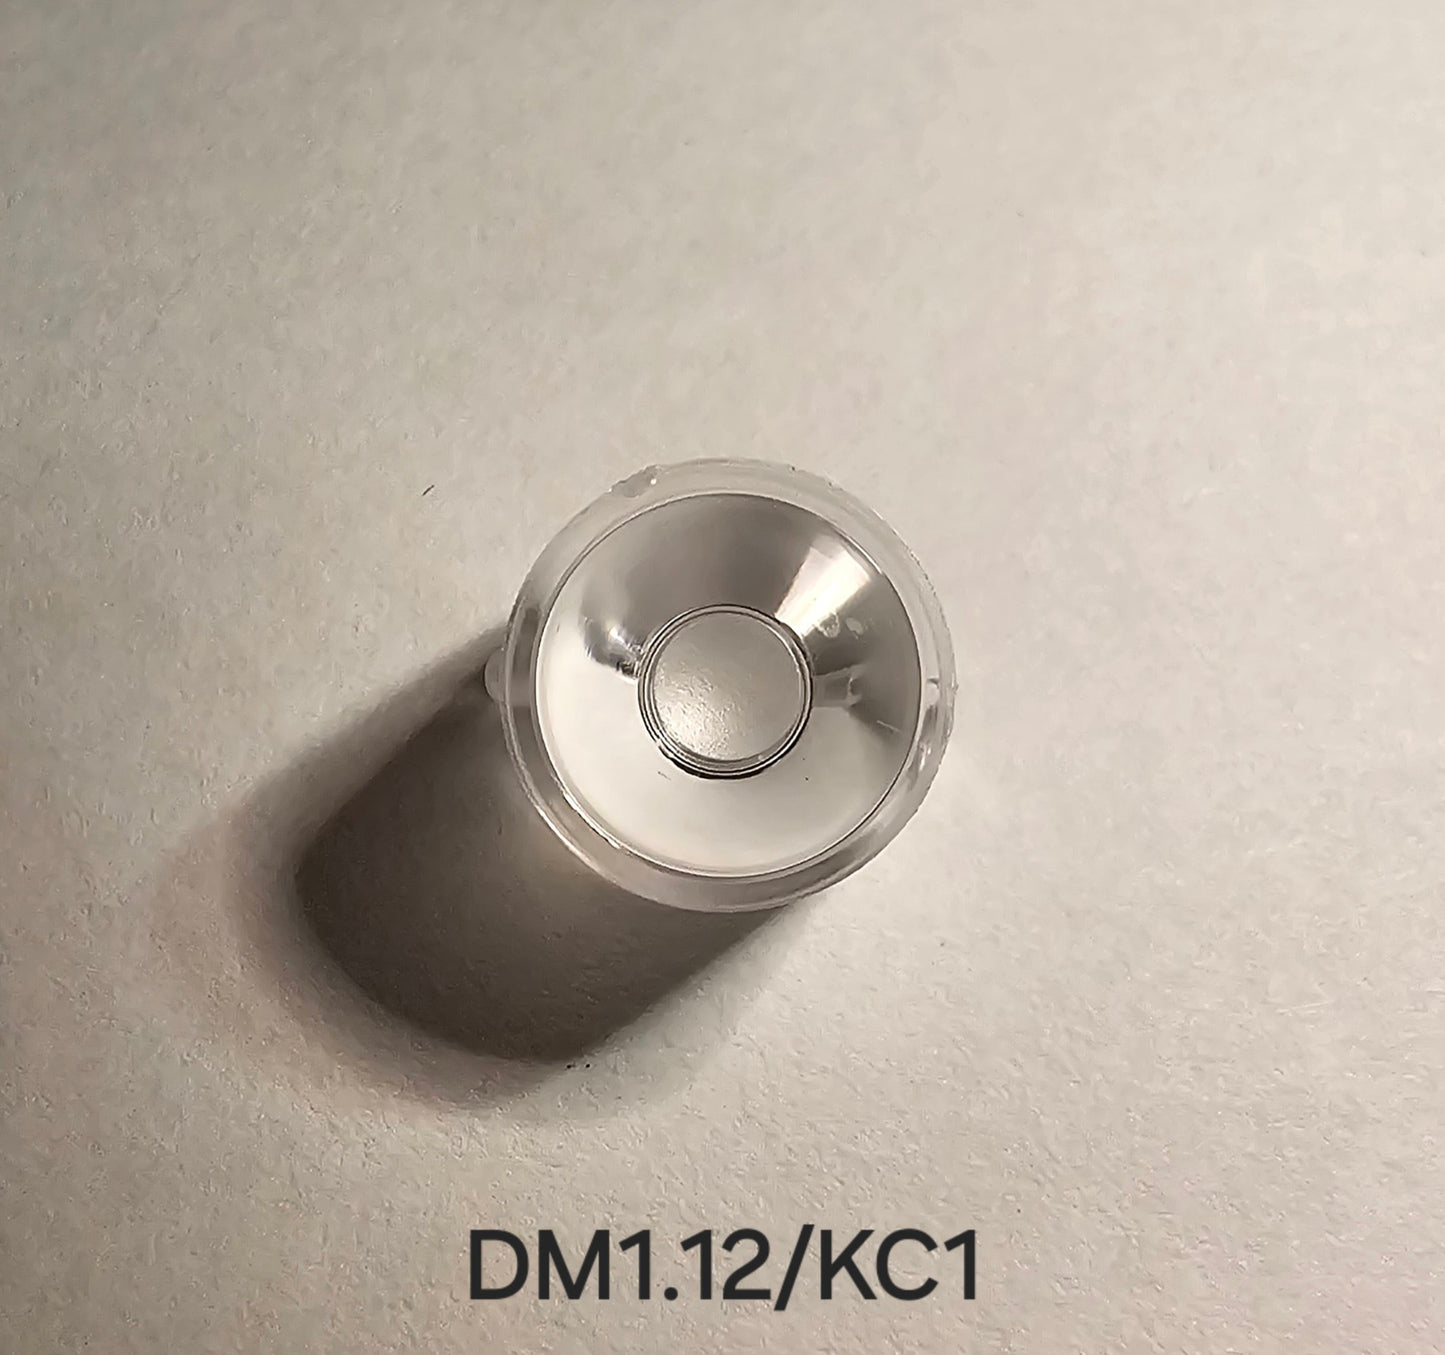 Emisar/Noctigon Replacement Glass TIR Optics LEDIL DM1.12 KC1 SPOT OPTICS